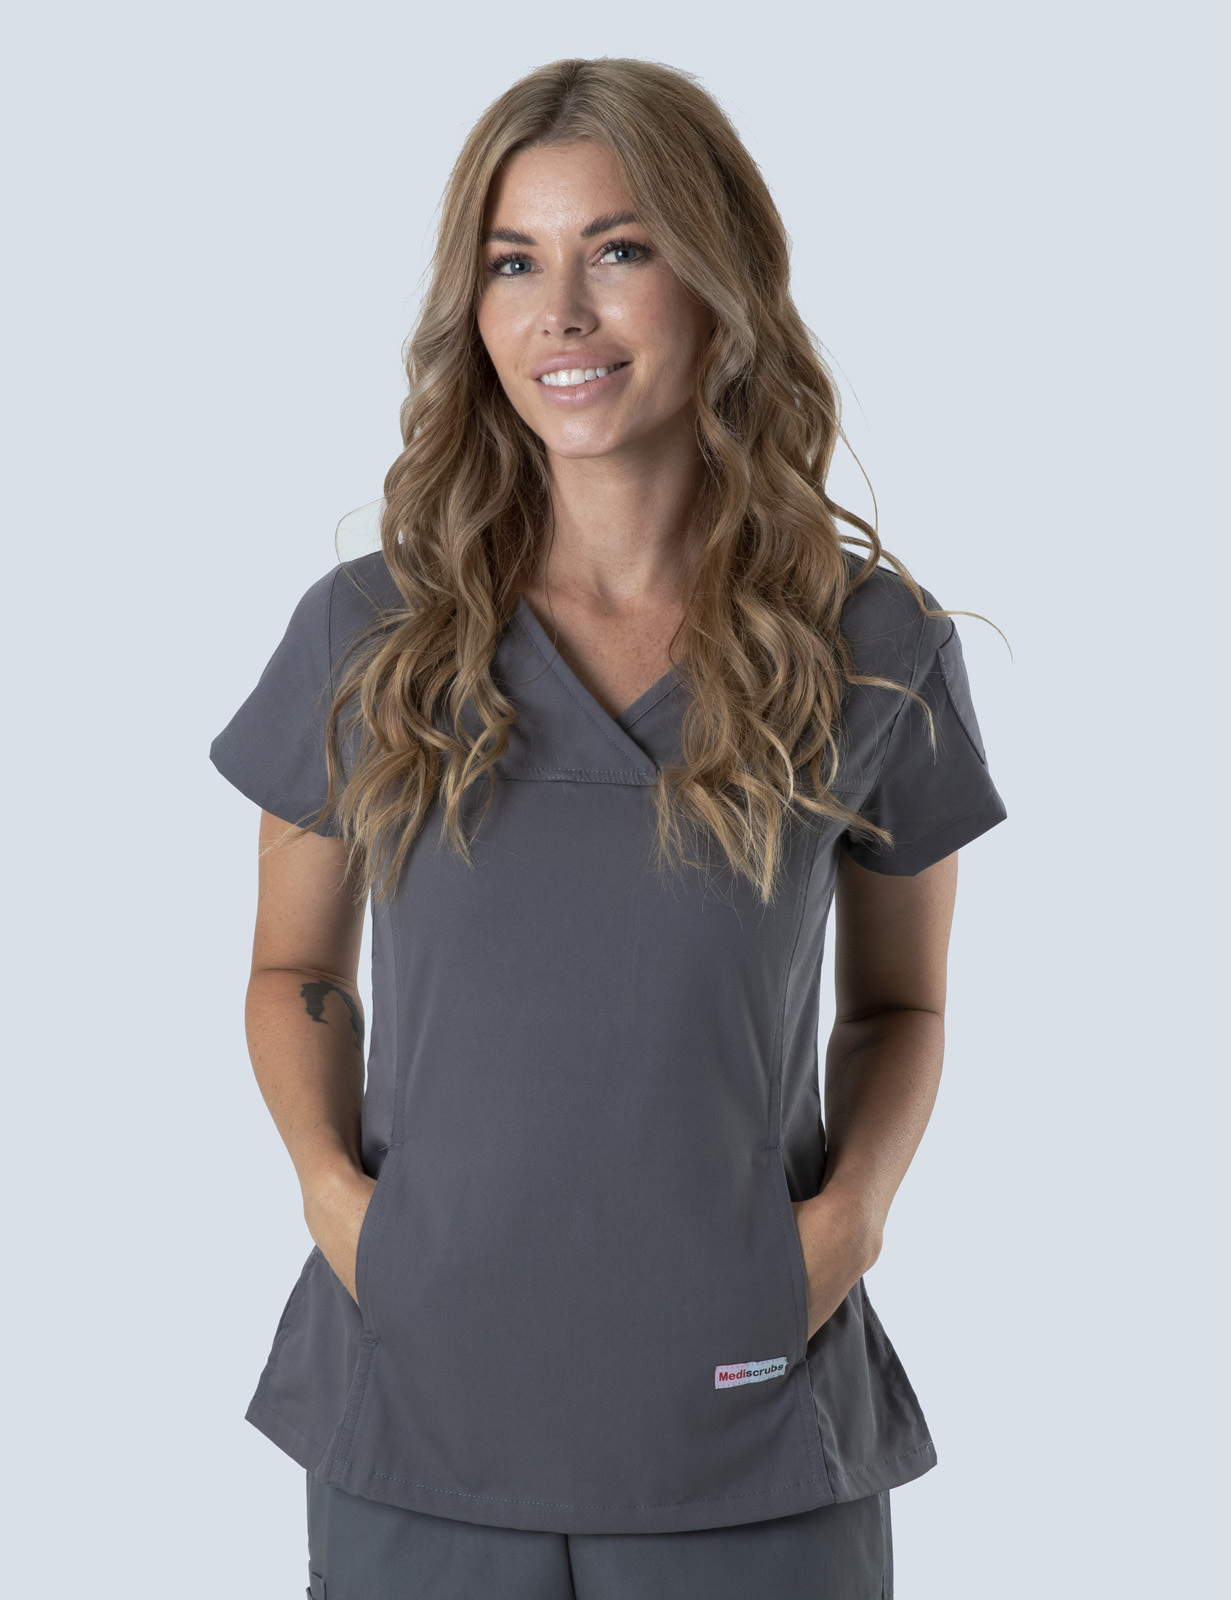 Queensland Children's Hospital Emergency Department Nurse Practitioner Uniform Top Bundle  (Women's Fit Top in Steel Grey incl Logos)